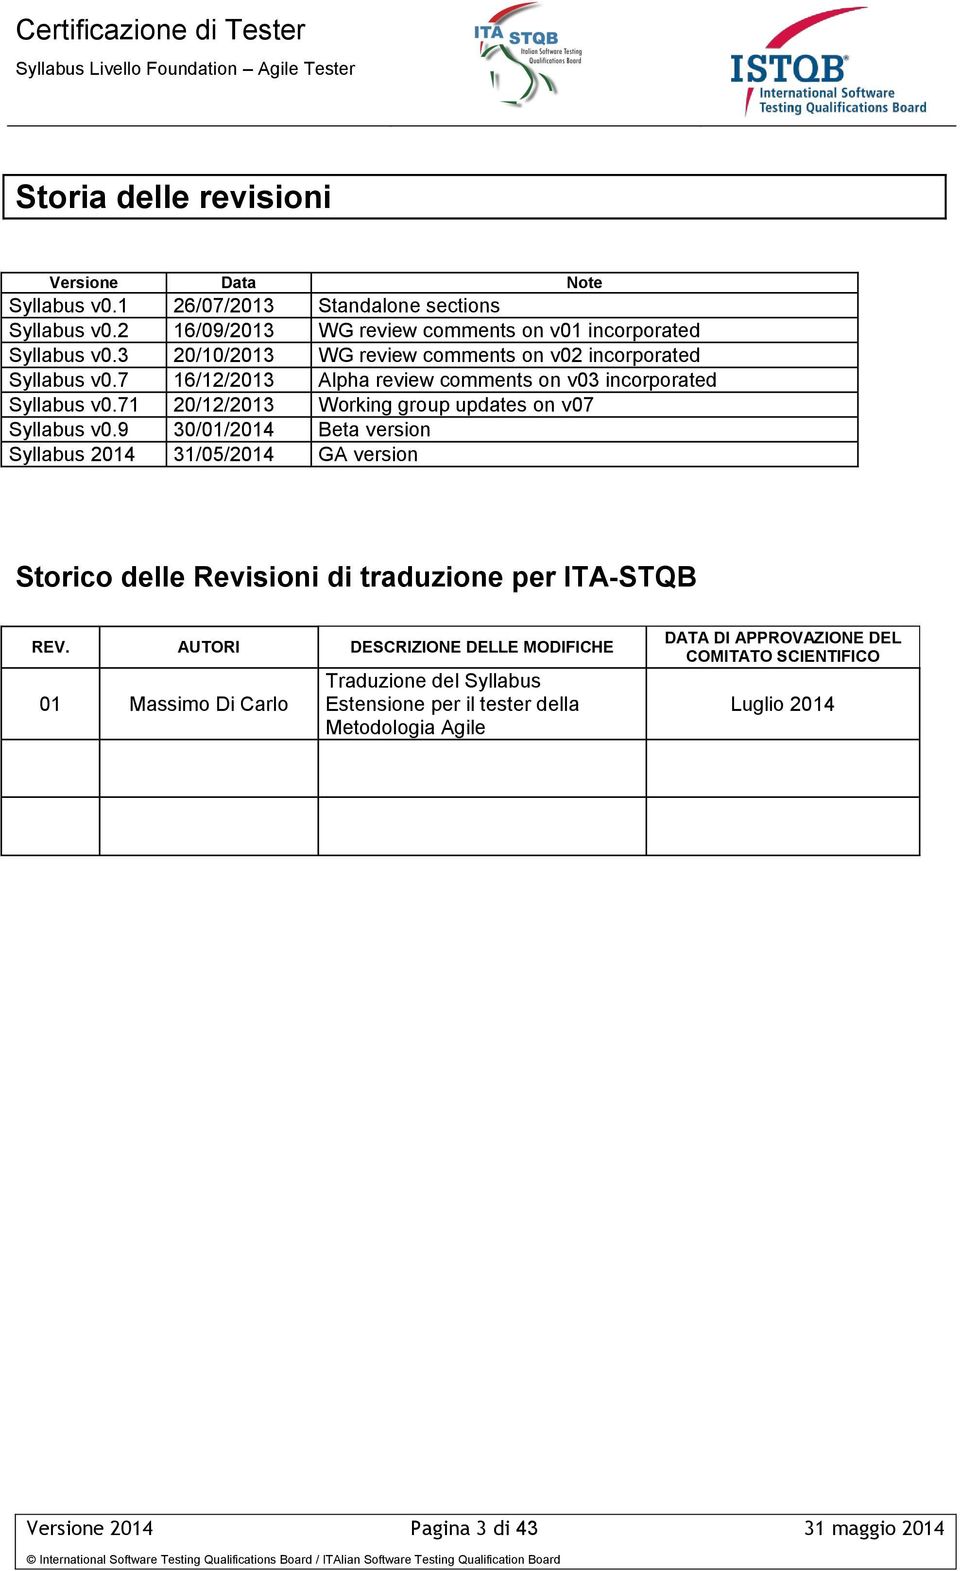 71 20/12/2013 Working group updates on v07 Syllabus v0.9 30/01/2014 Beta version Syllabus 2014 31/05/2014 GA version Storico delle Revisioni di traduzione per ITA-STQB REV.